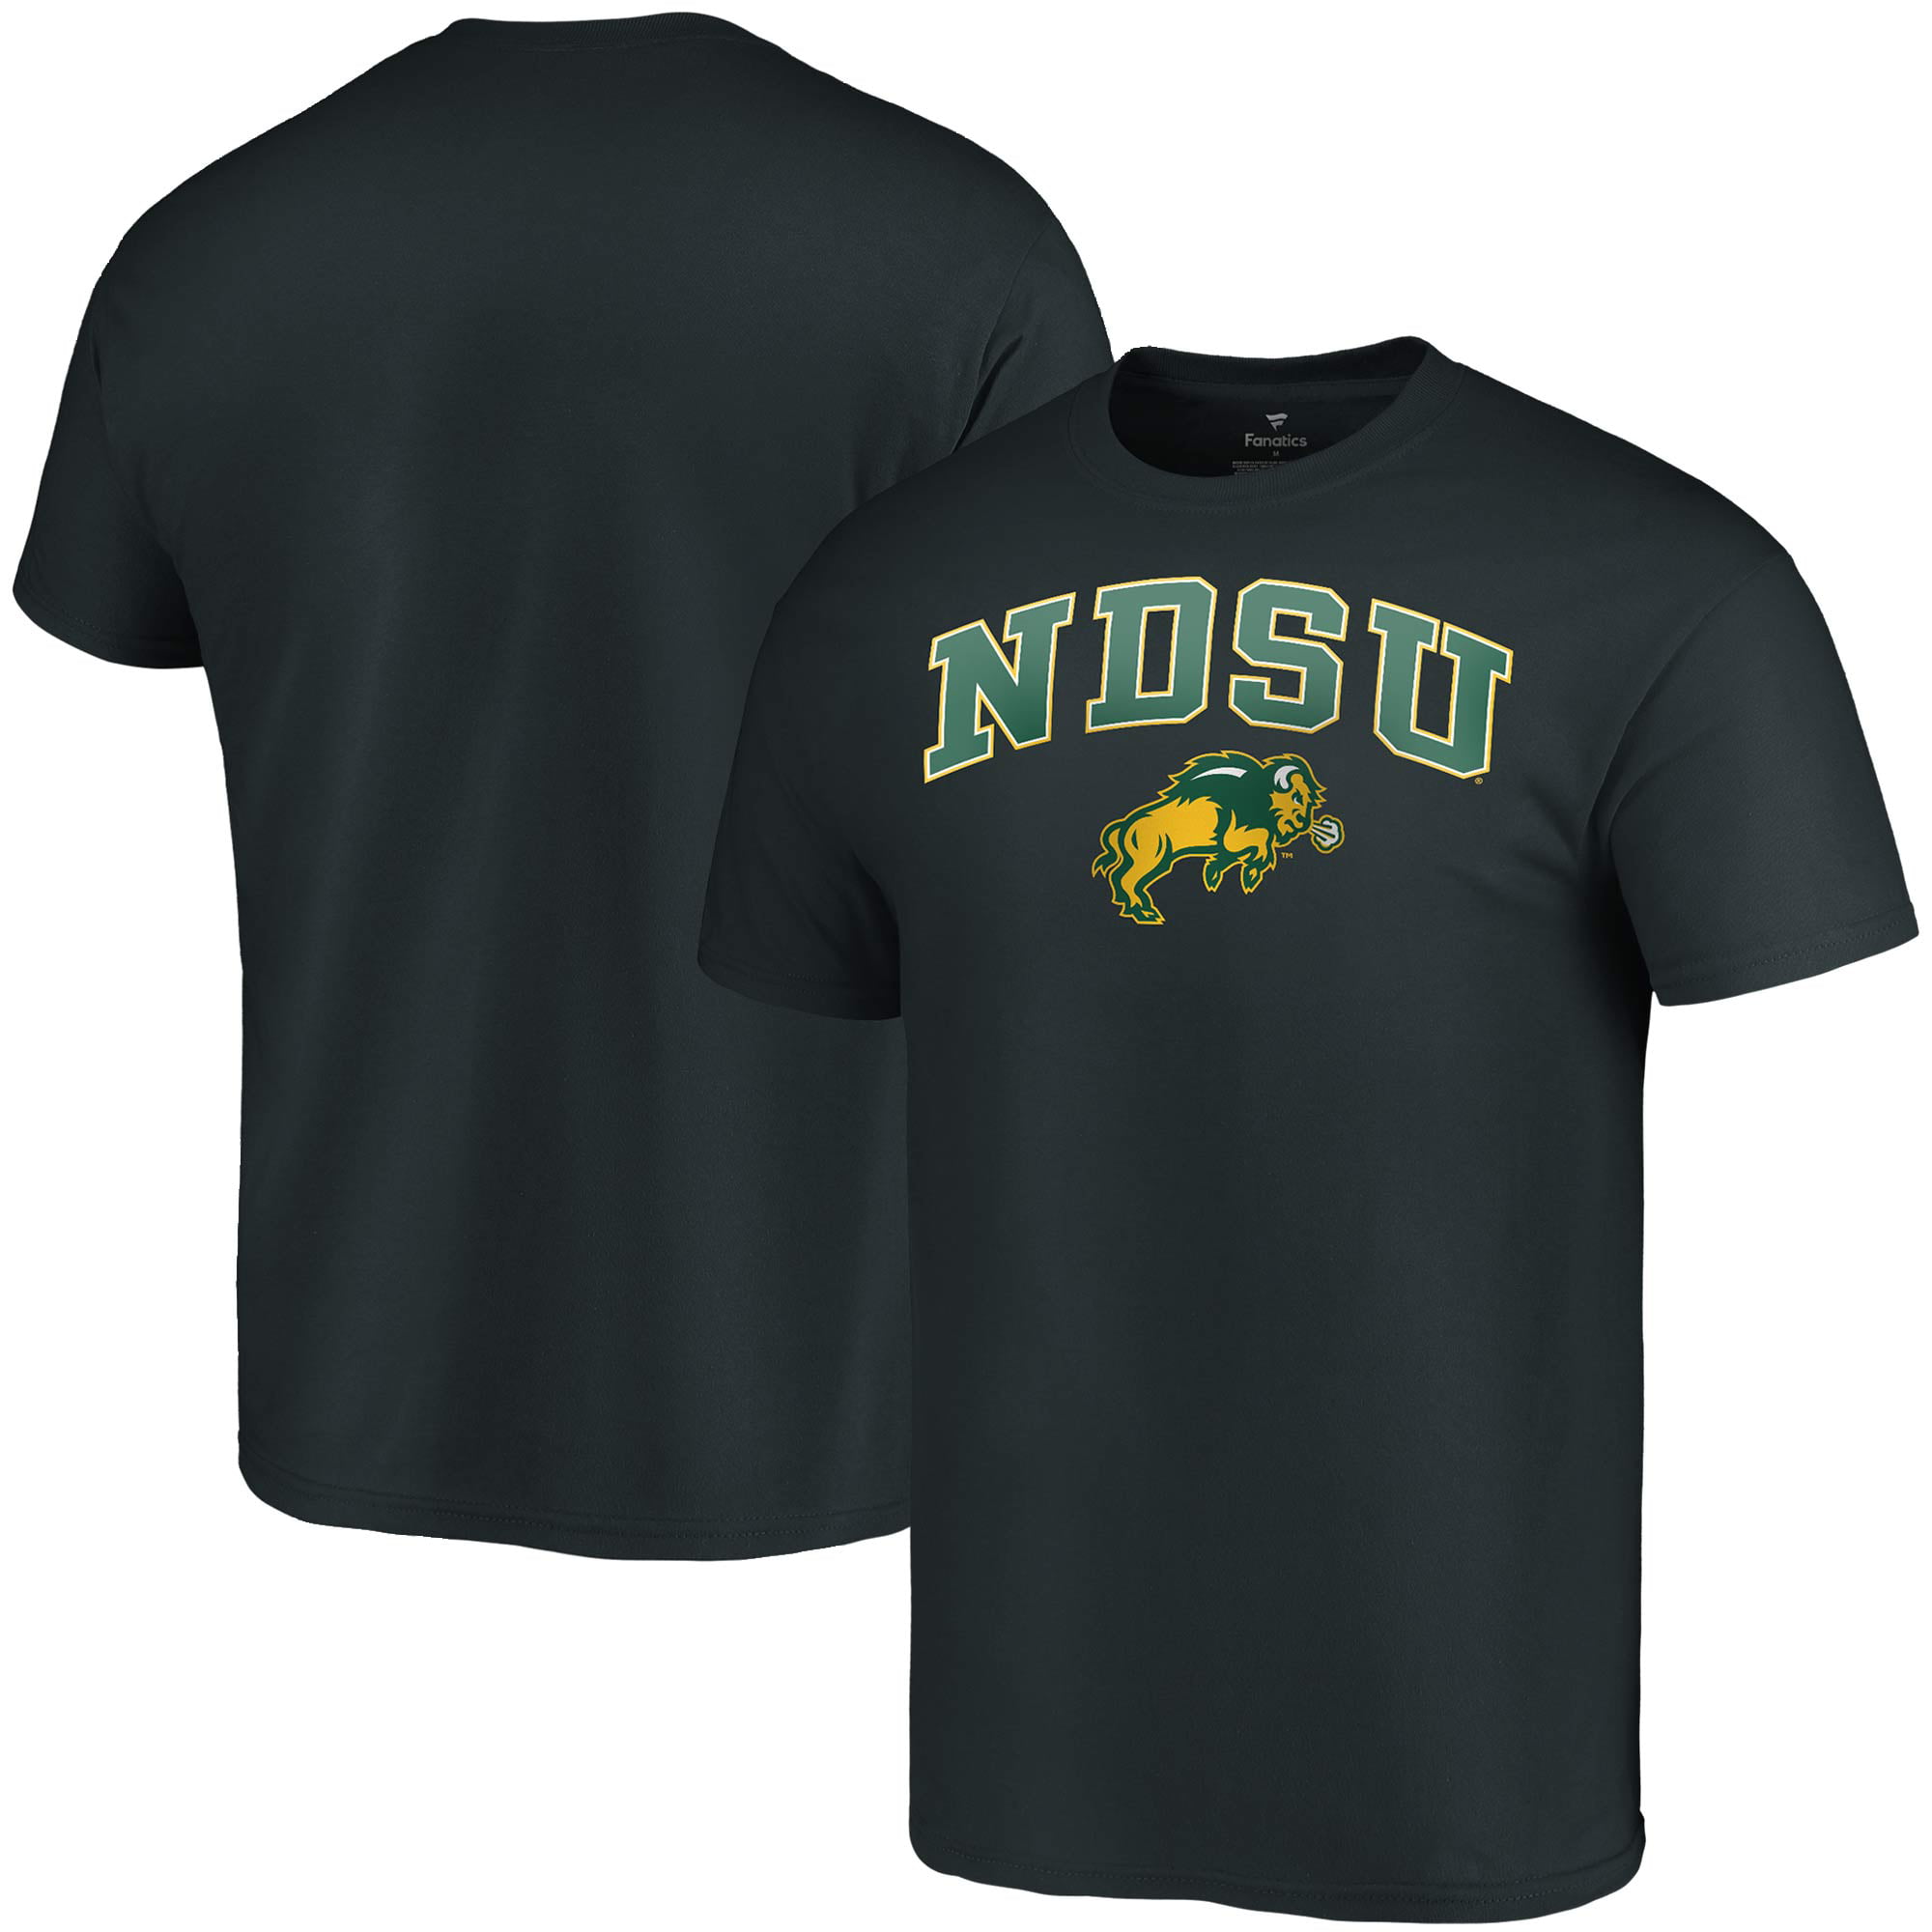 NDSU Bison Campus T-Shirt - Black 